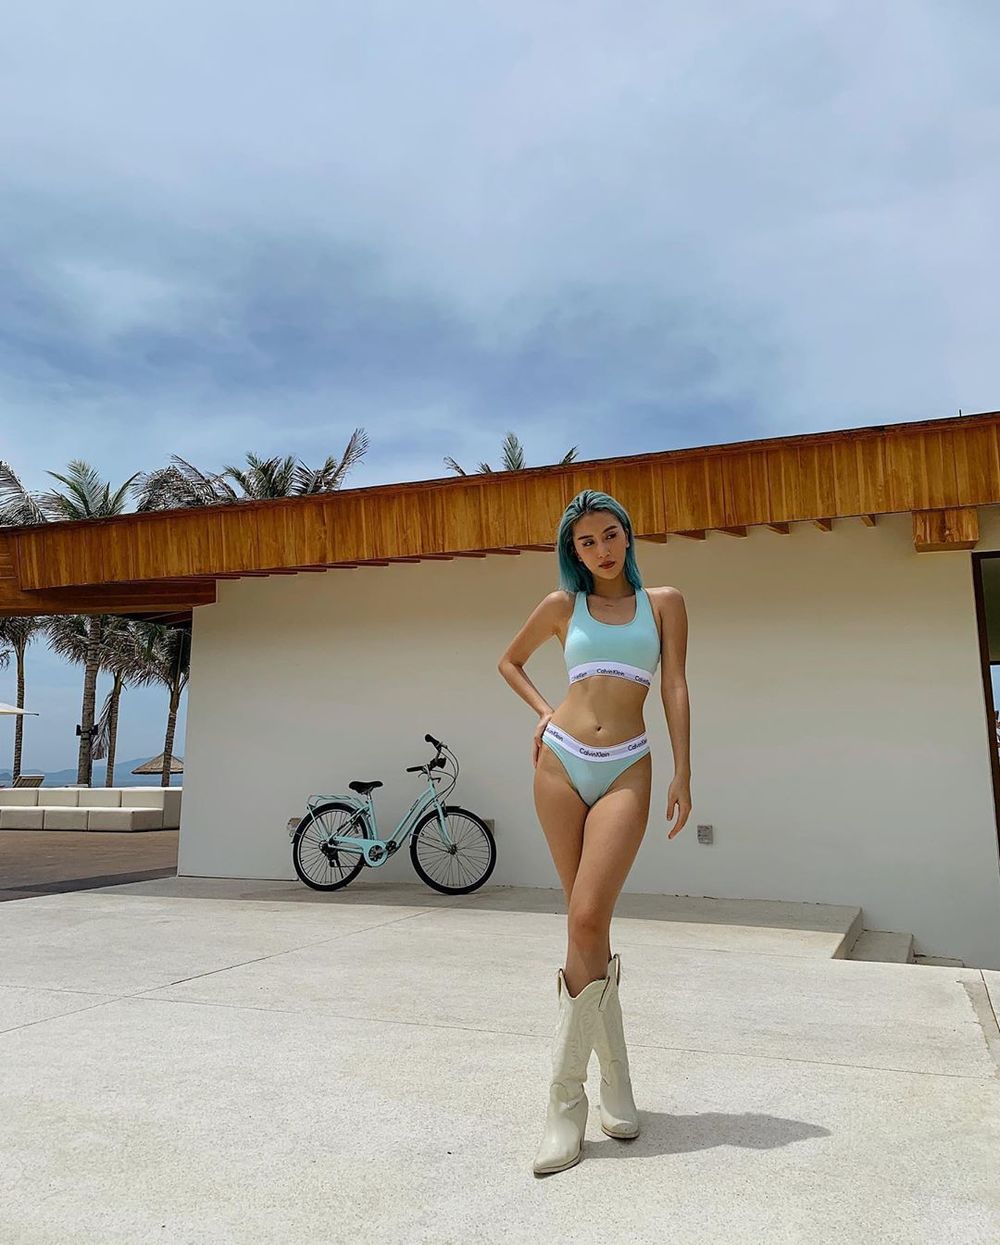  
Cũng trong chuyến đi mừng sinh nhật Chi Pu, Quỳnh Anh Shyn diện bộ đồ bơi xanh bạc hà, phối boot cao cổ lạ mắt. (Ảnh: Instagram nhân vật)